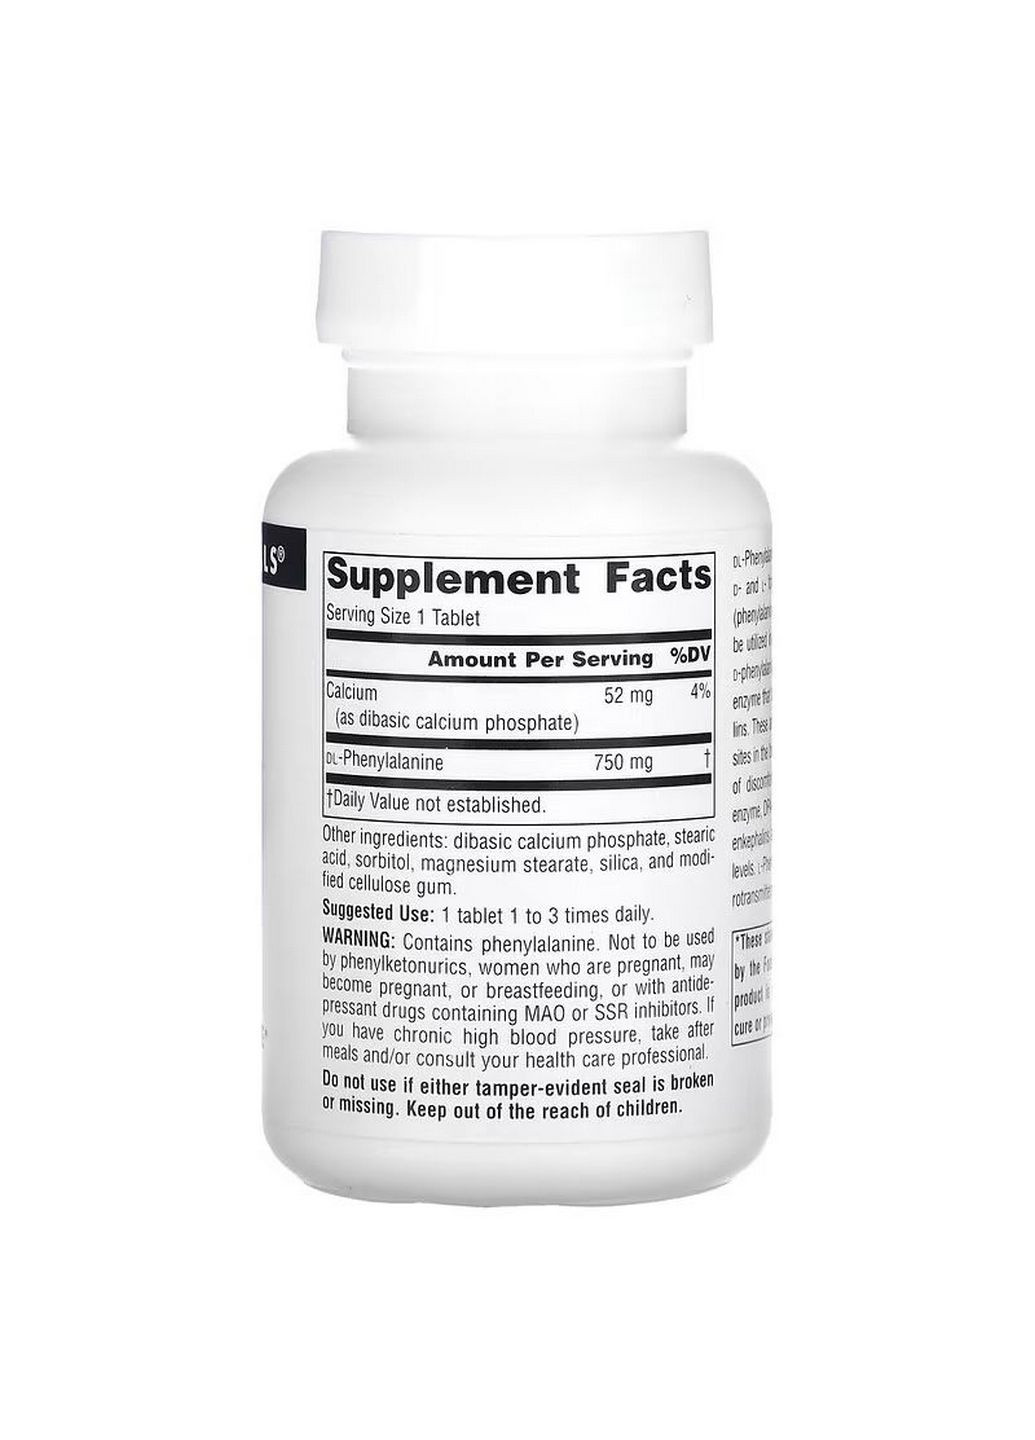 Аминокислота DLPA 750 mg, 60 таблеток Source Naturals (293341994)